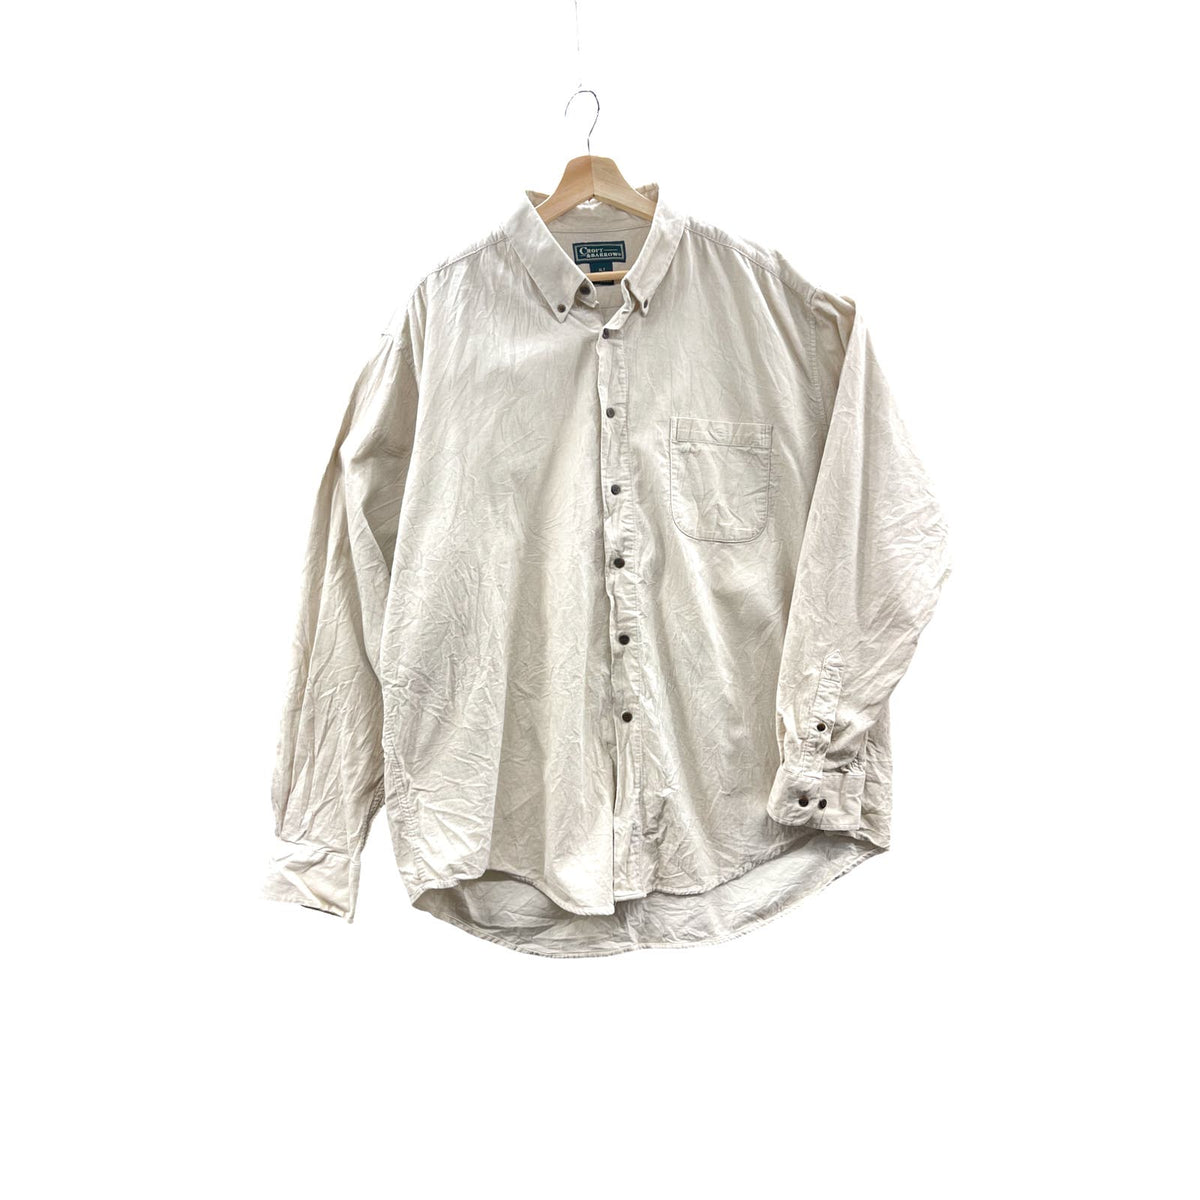 Vintage 1990's Croft & Barrow Light Beige Corduroy Button Down L/S Shirt